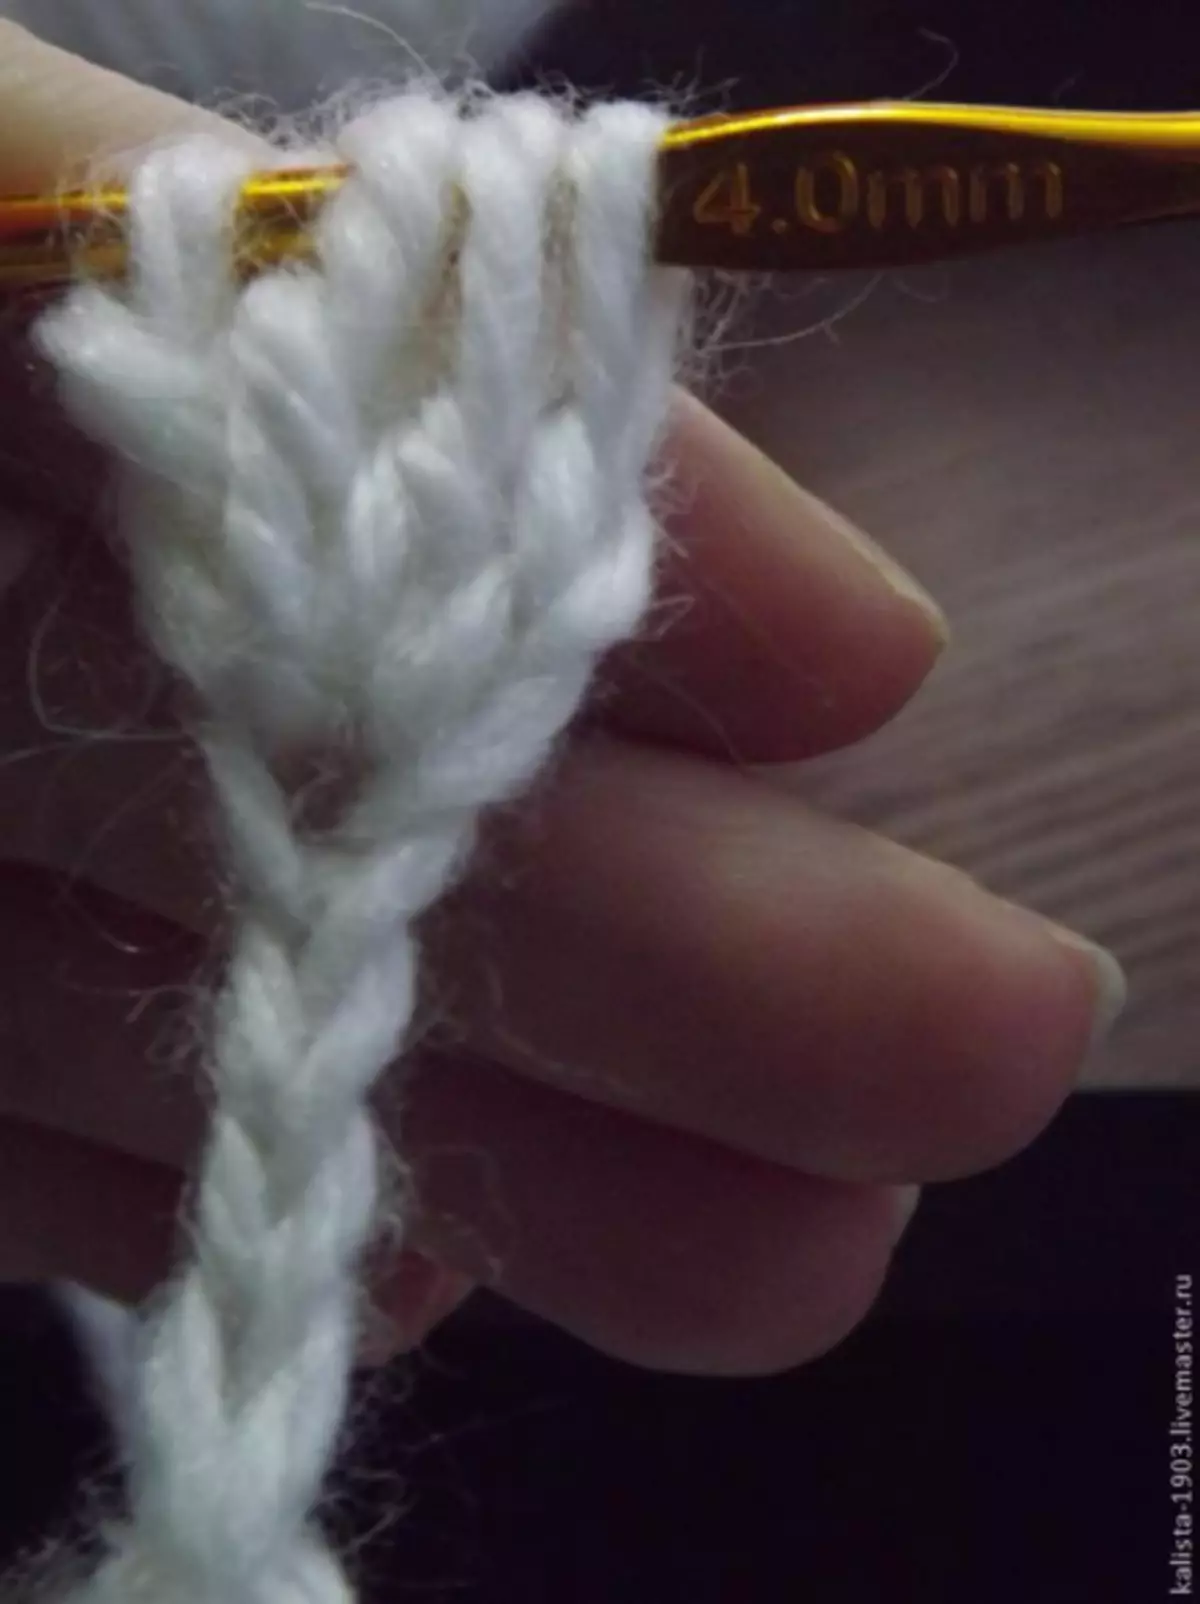 Yeni başlayanlar üçün körpə Crochet: Video ilə sxem